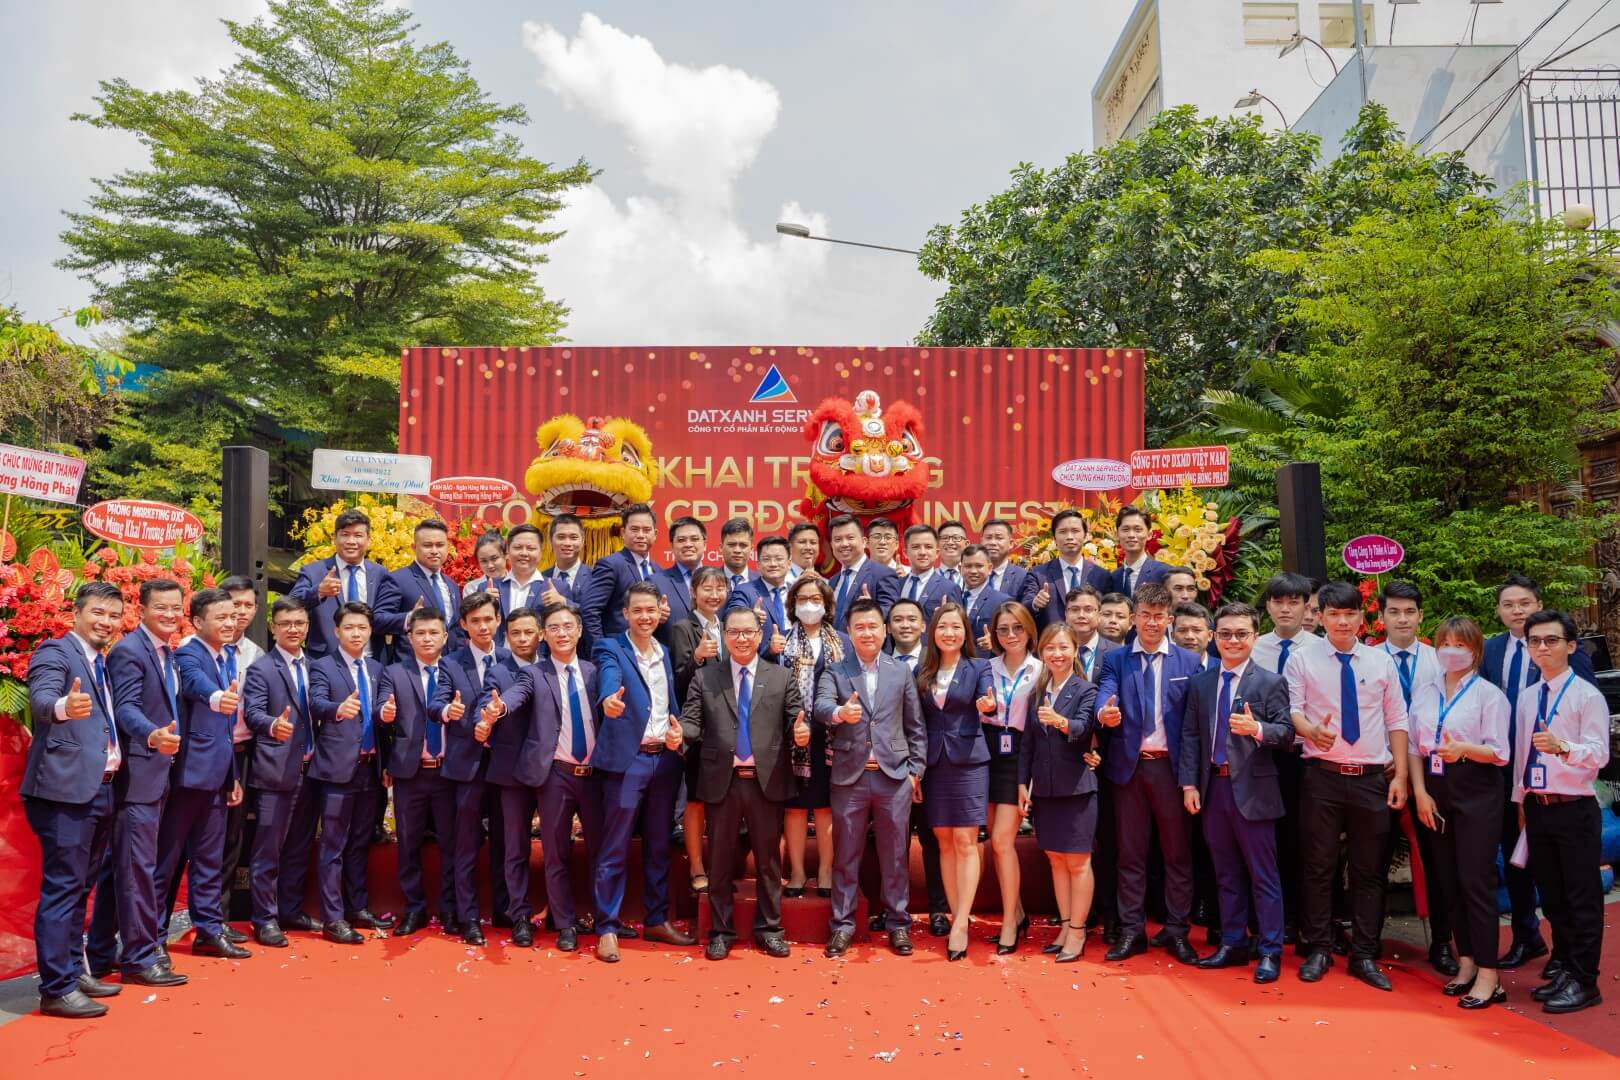 DXMD Vietnam khai truong cong ty City Invest 1 | DXMD Vietnam